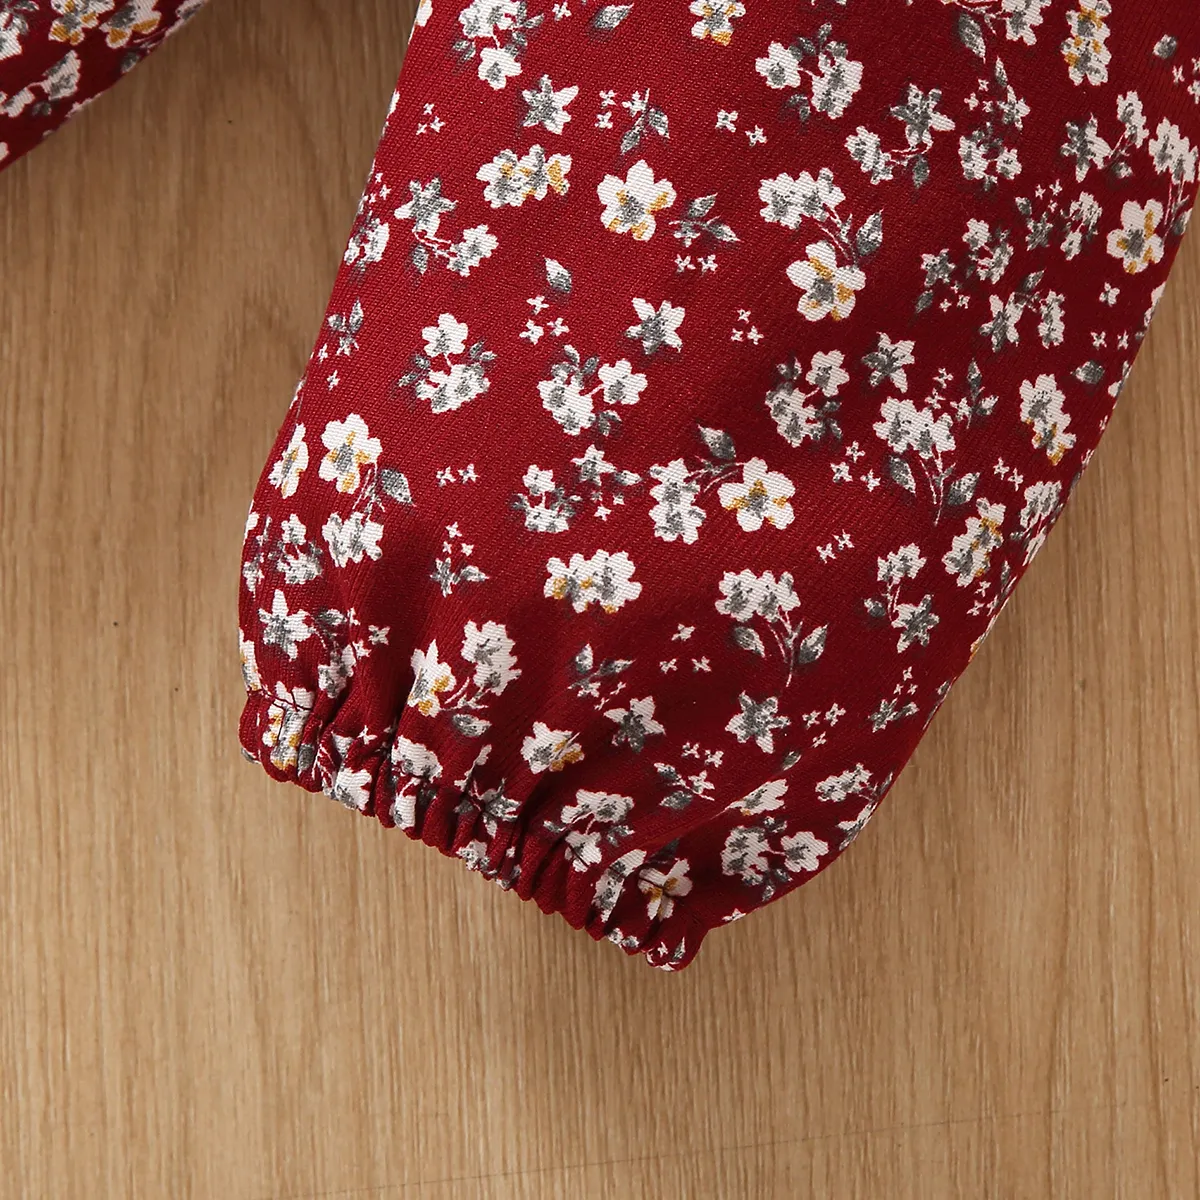 2 قطعة طفلة 95٪ قطن طويل الأكمام قميص من النوع الثقيل بطبعة أرنب الكرتون ومجموعة بنطلون طباعة الأزهار أحمر big image 1